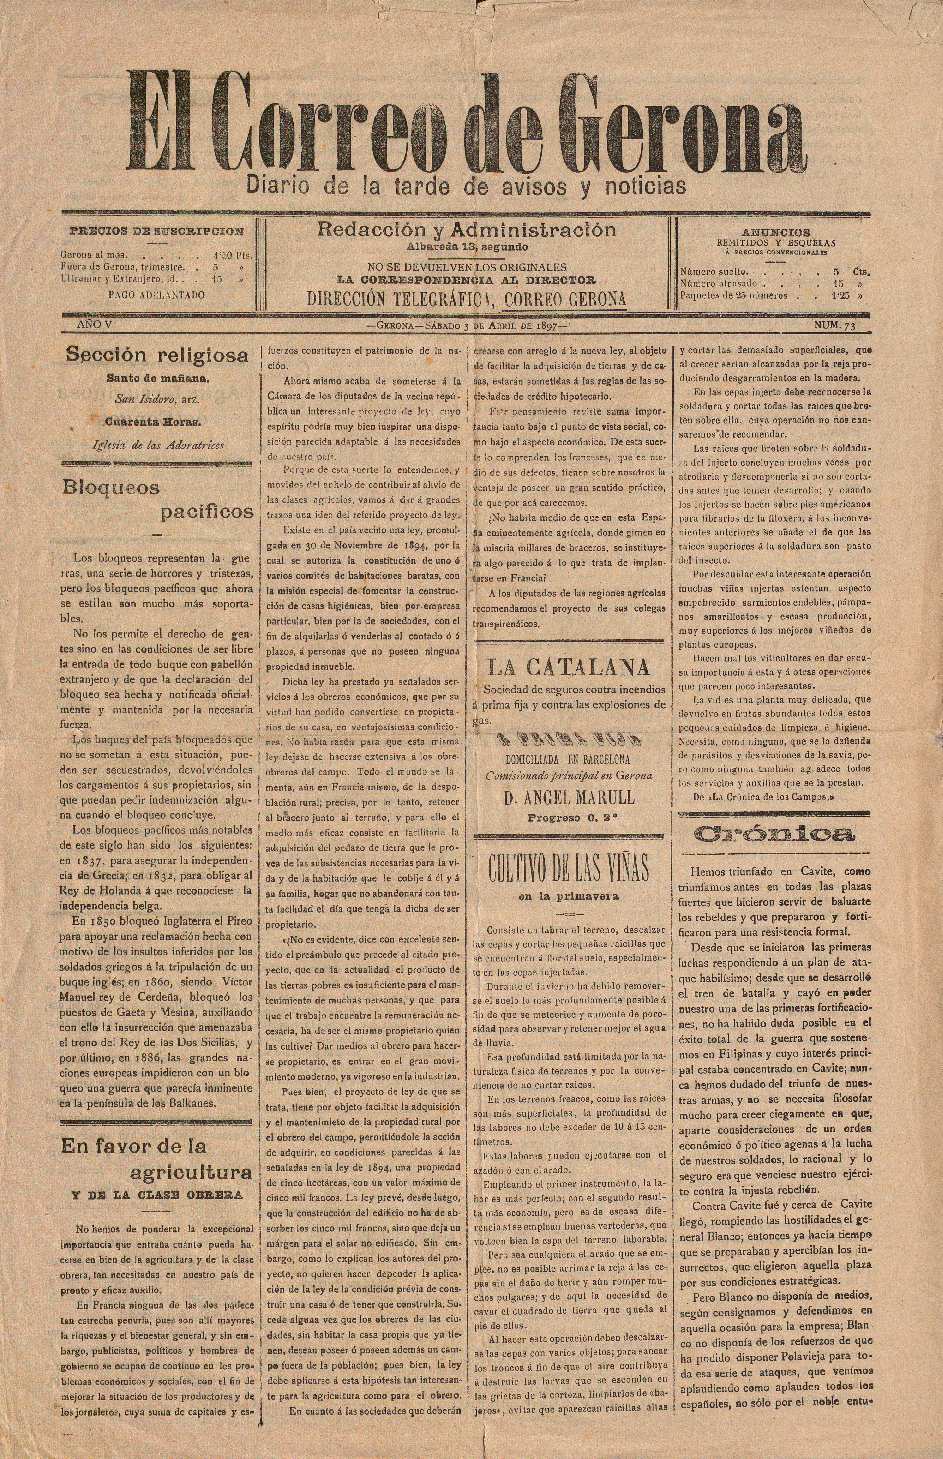 Correo de Gerona, El. 3/4/1897. [Exemplar]